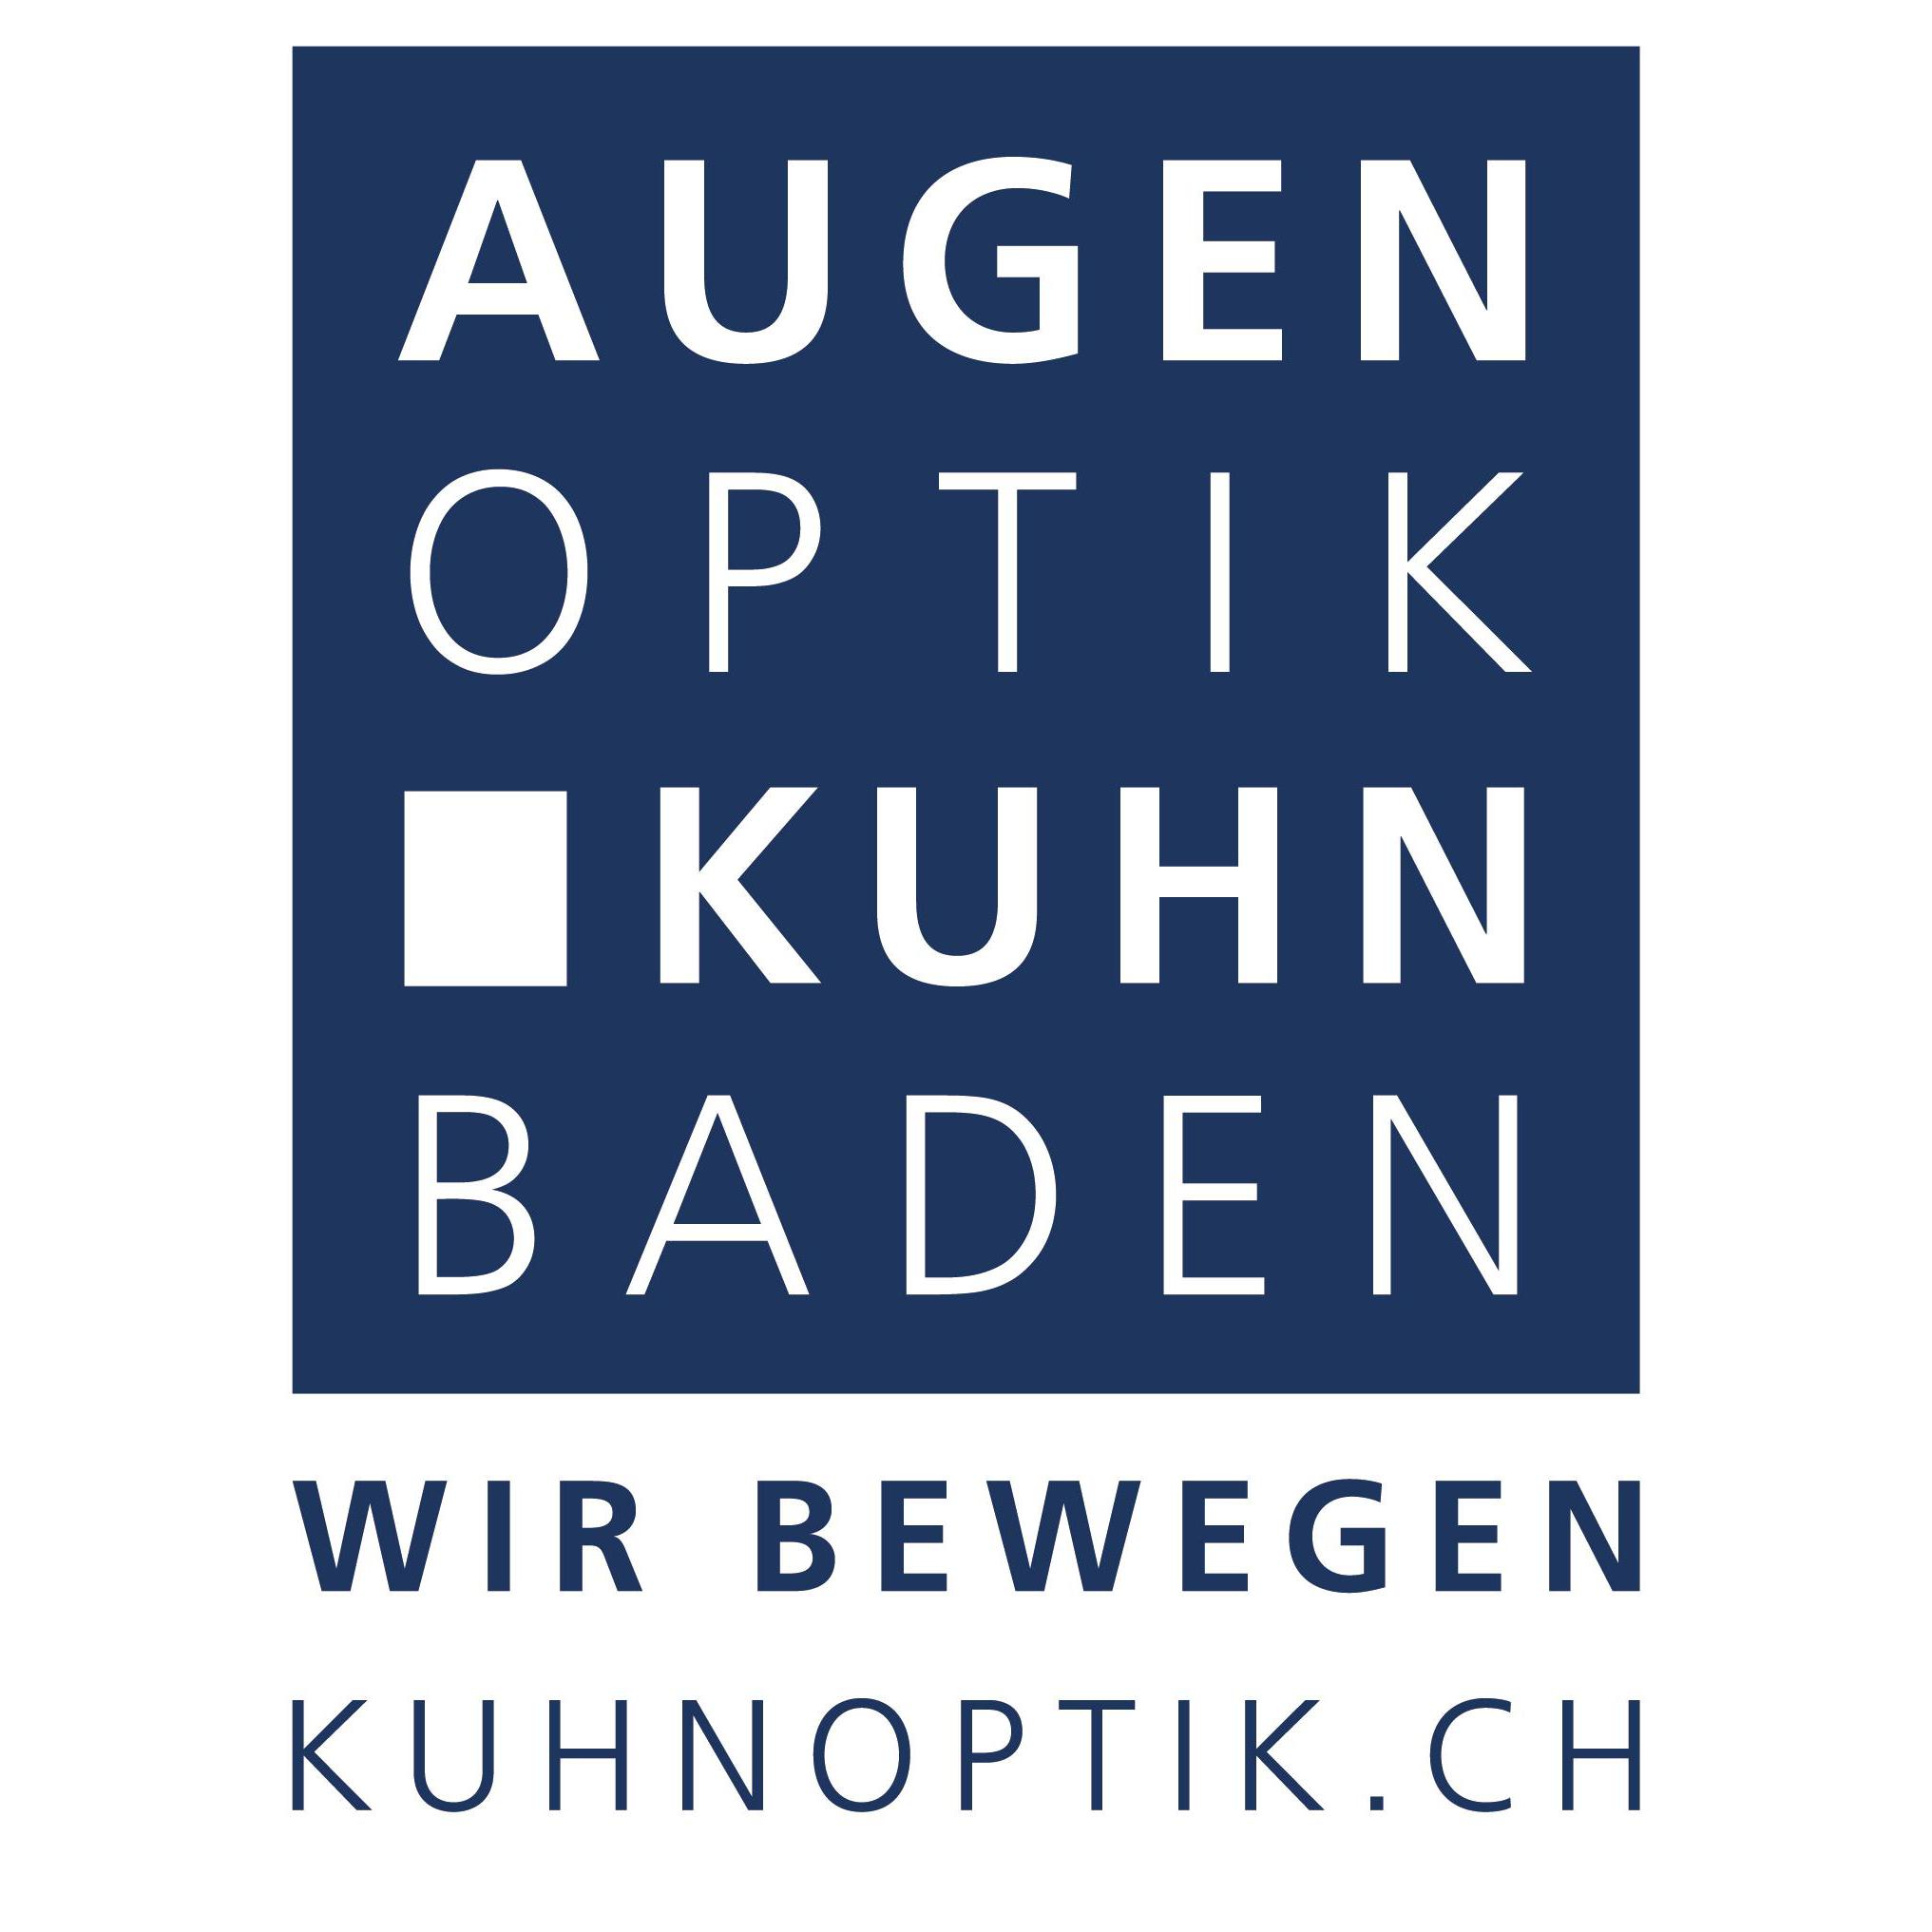 AUGENOPTIK KUHN AG Logo